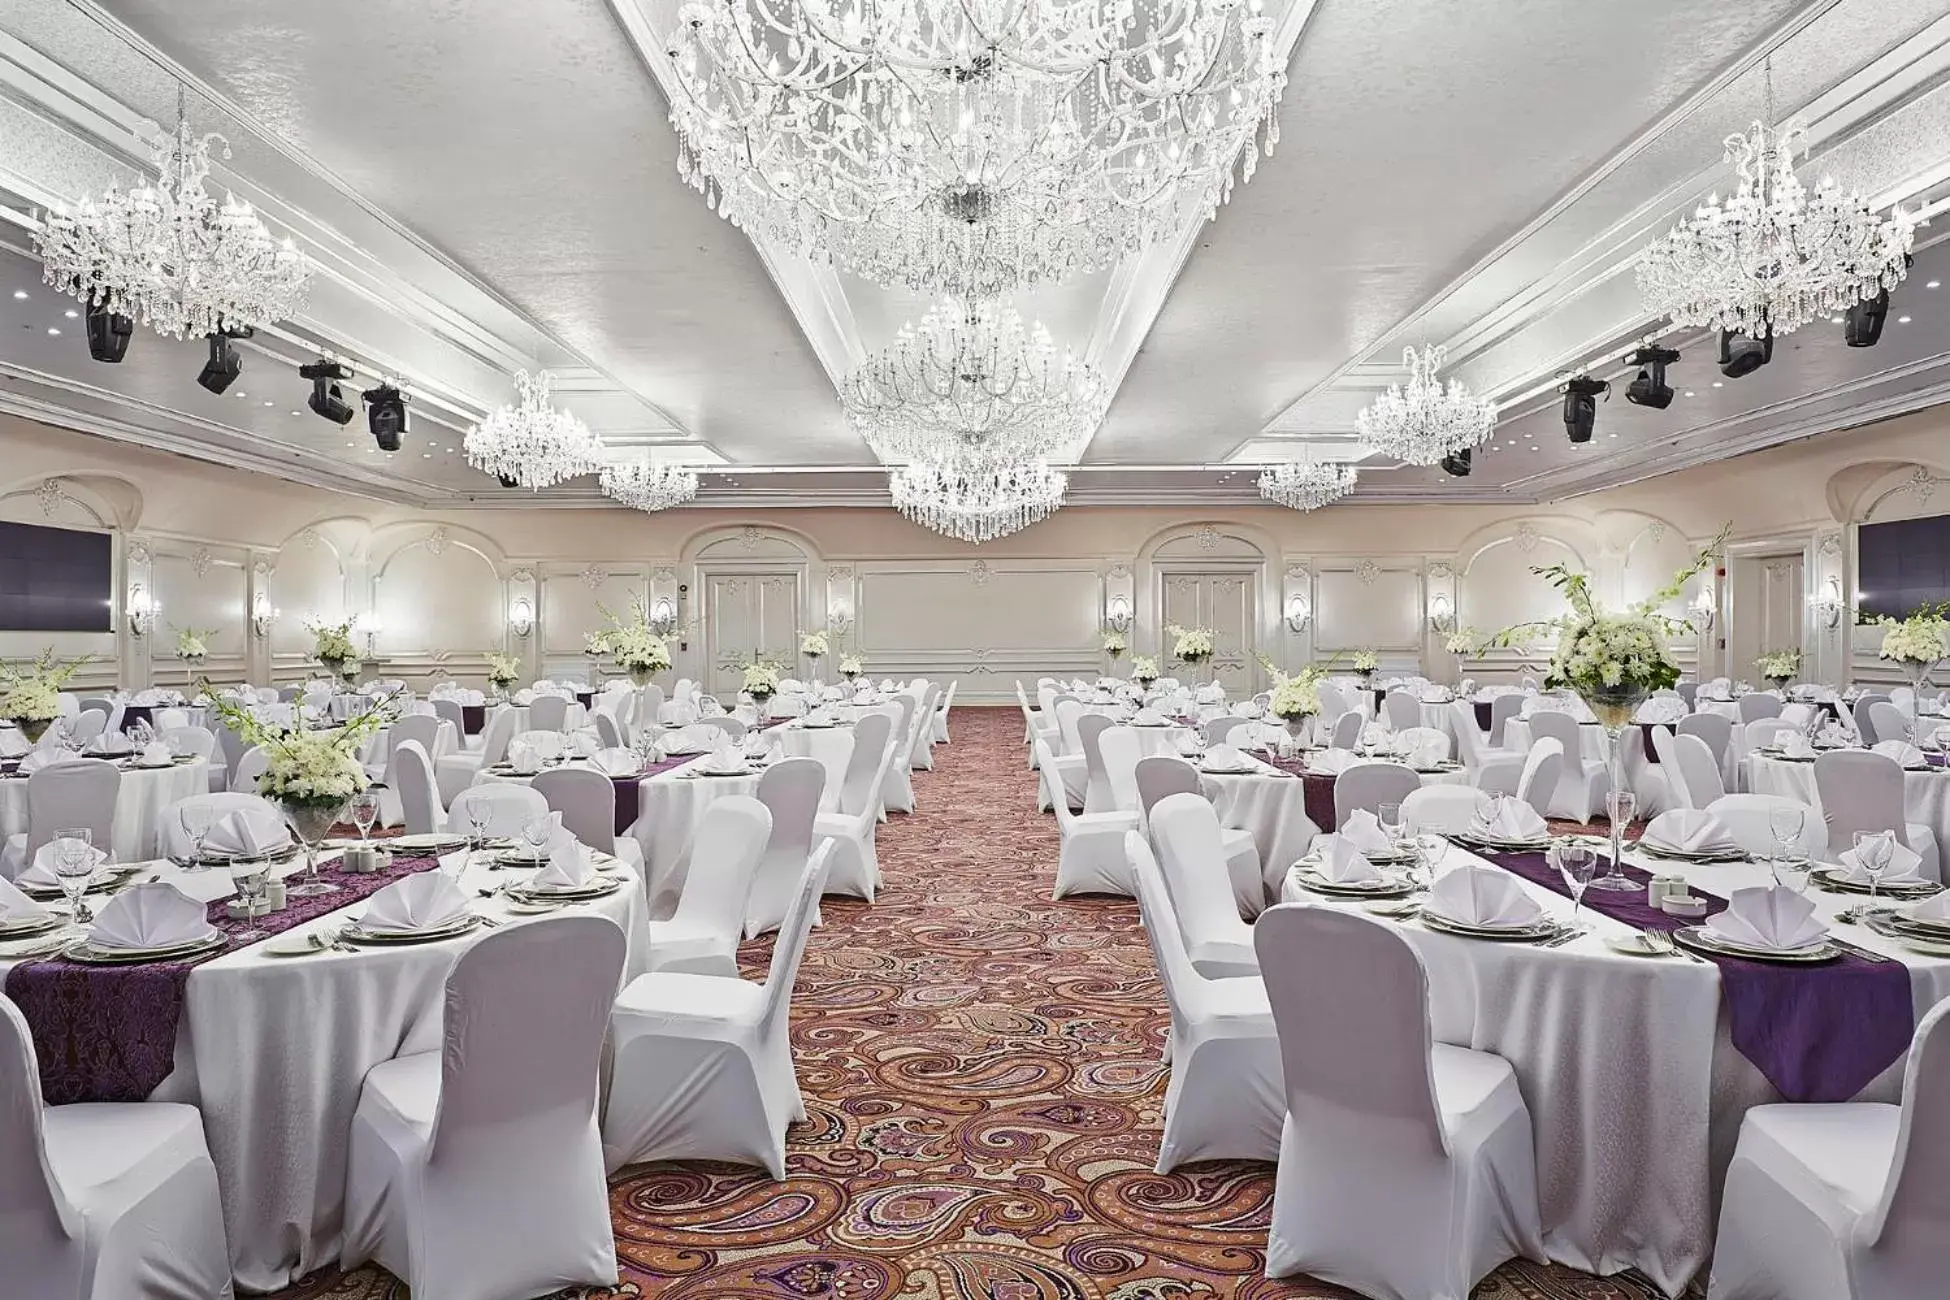 Banquet/Function facilities, Banquet Facilities in Al Masa Hotel